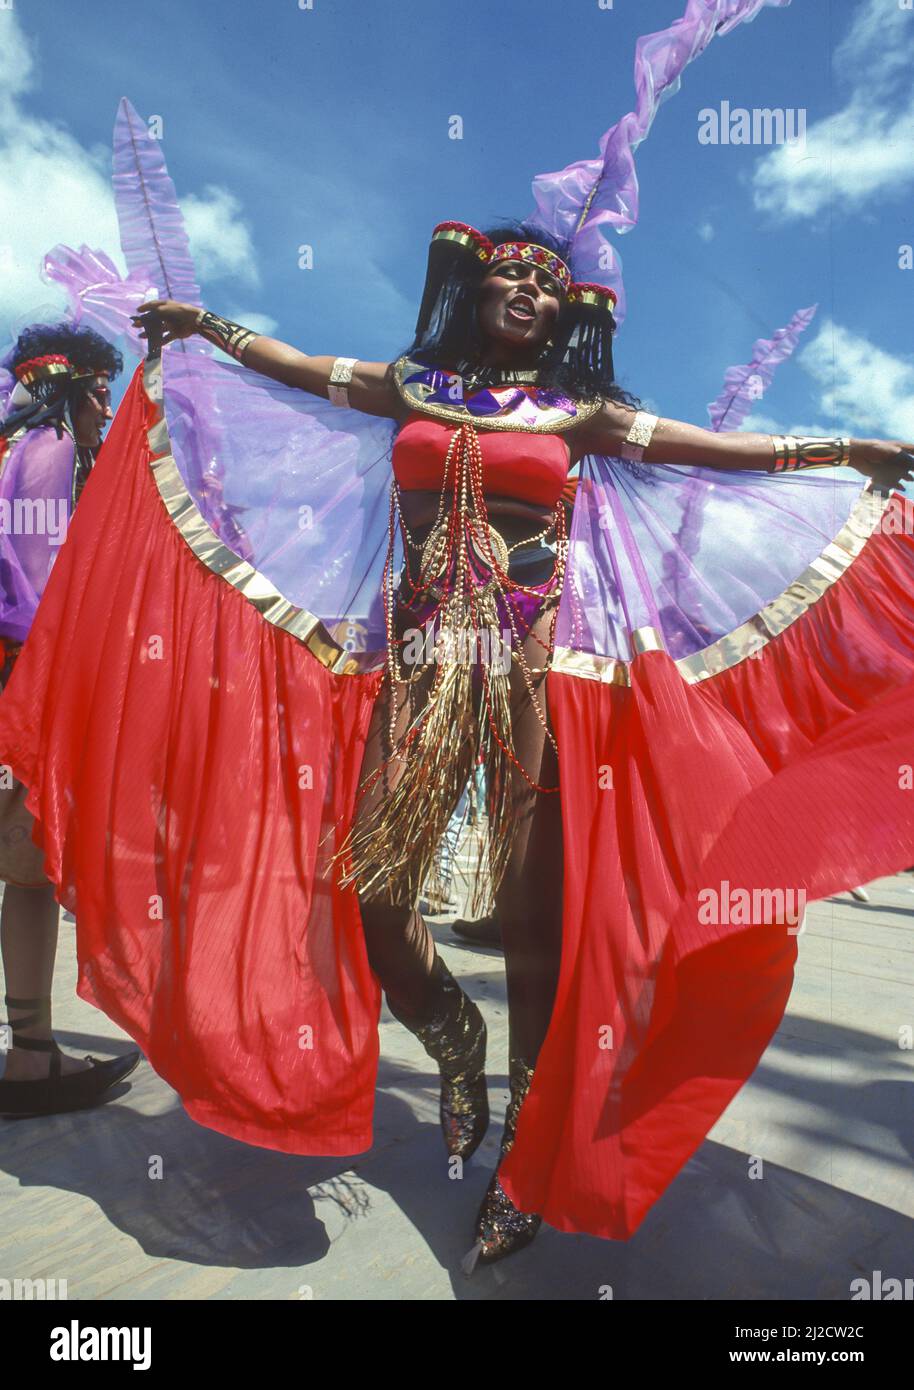 PORT OF SPAIN, TRINIDAD - Carnival dancer in costume. Stock Photo